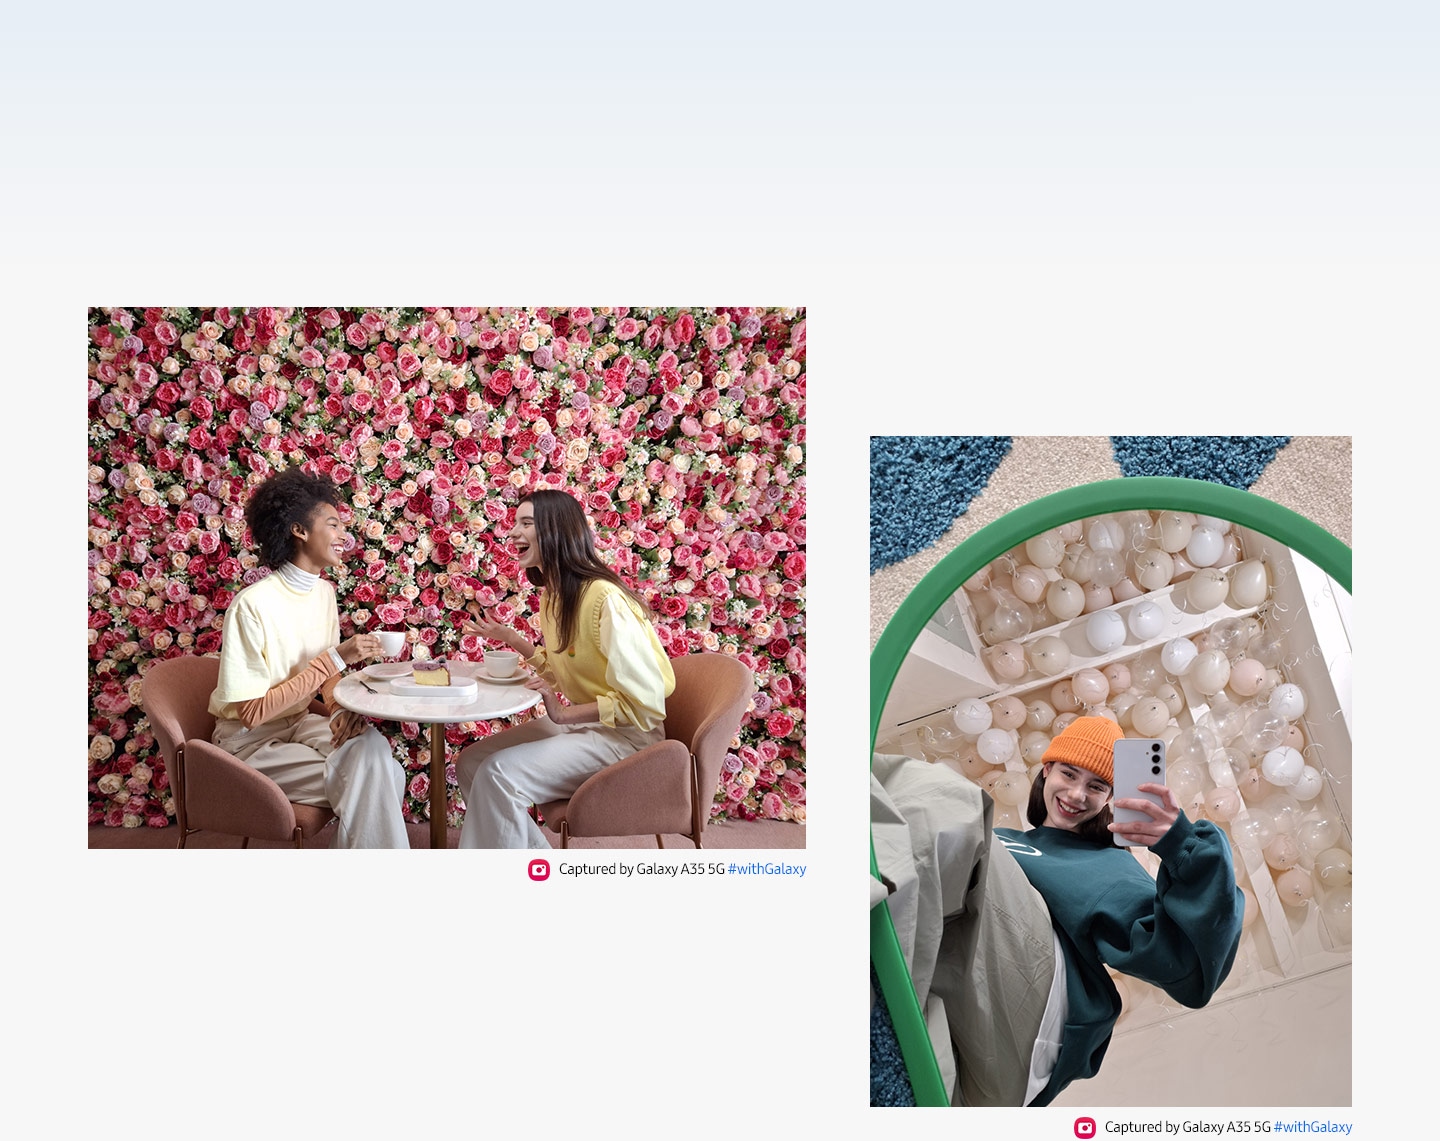 Dos personas conversan en una mesa, con un vibrante fondo de pared floral rosado. Y una selfie de espejo de una persona con un fondo de globos blancos. El texto dice Capturado con el Galaxy A35 5G #withGalaxy.